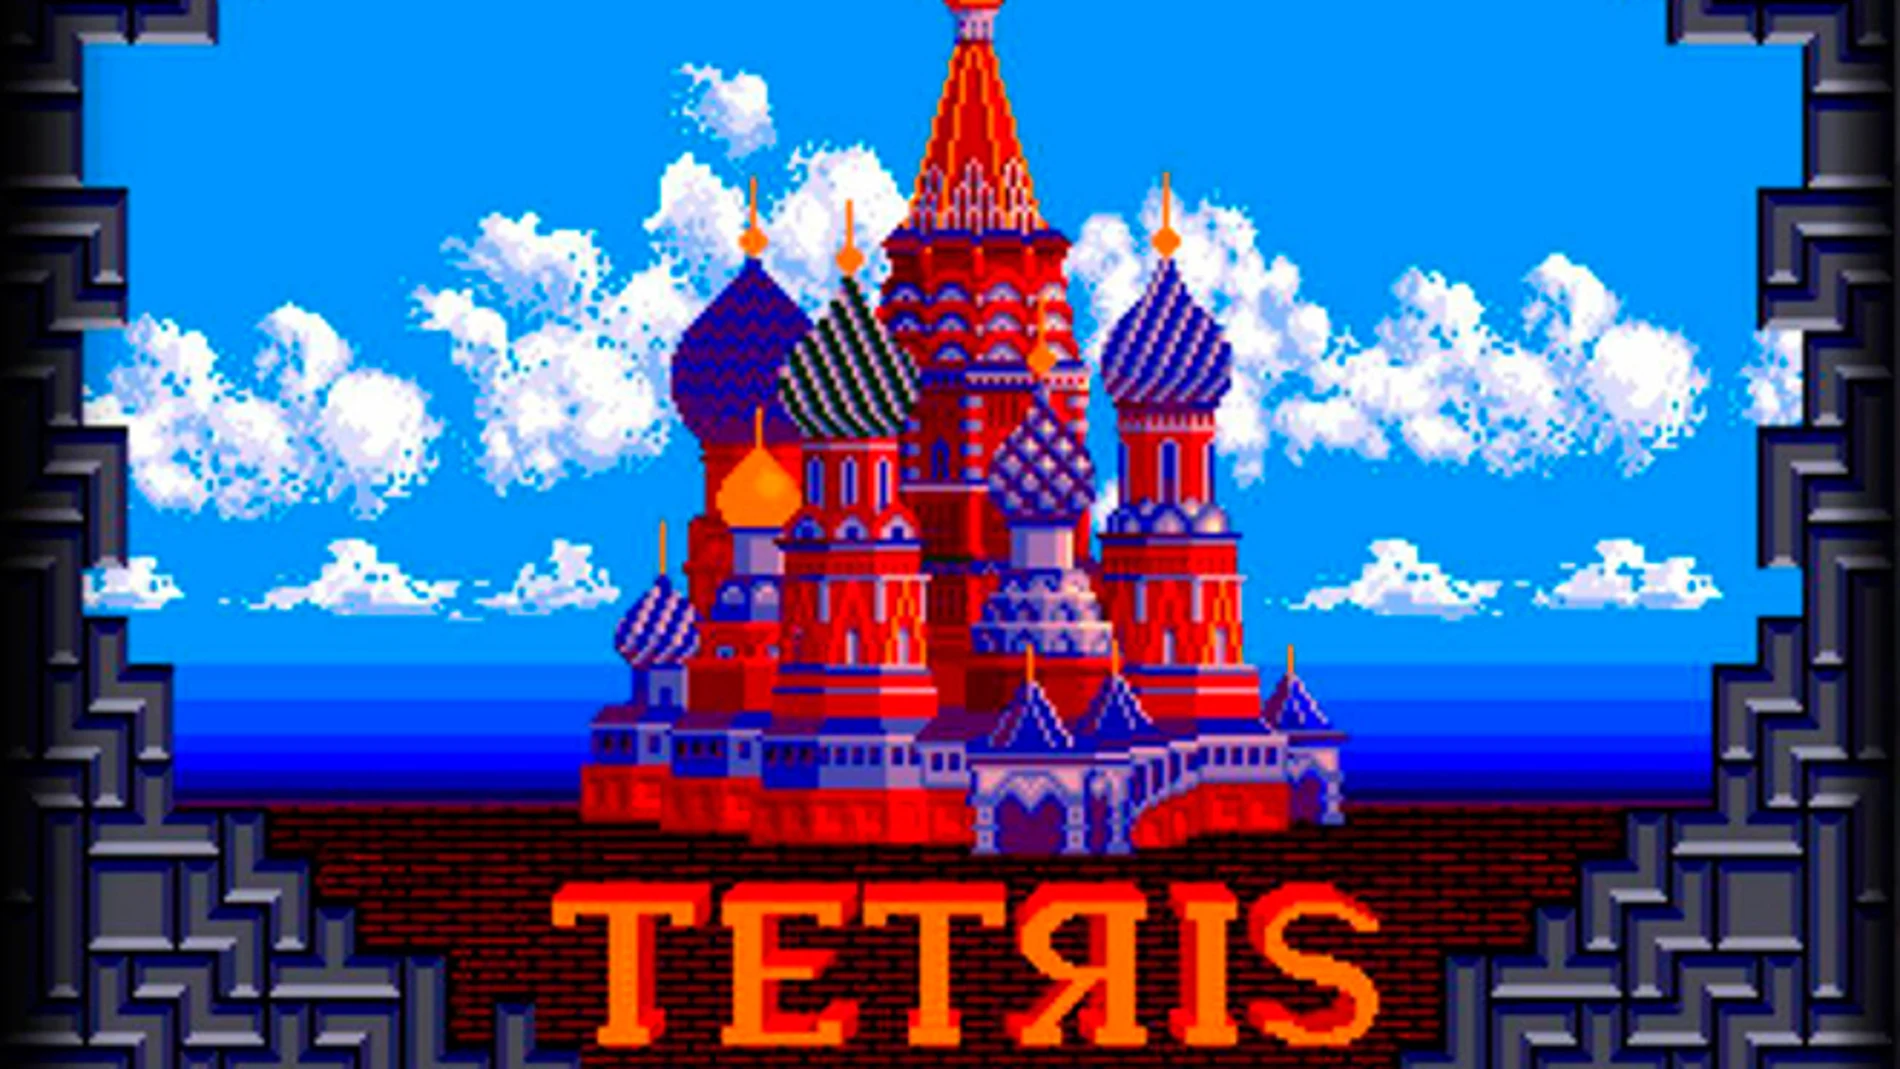 Esta es la increíble historia de Tetris, el videojuego que cambió el mundo en plena guerra fría.